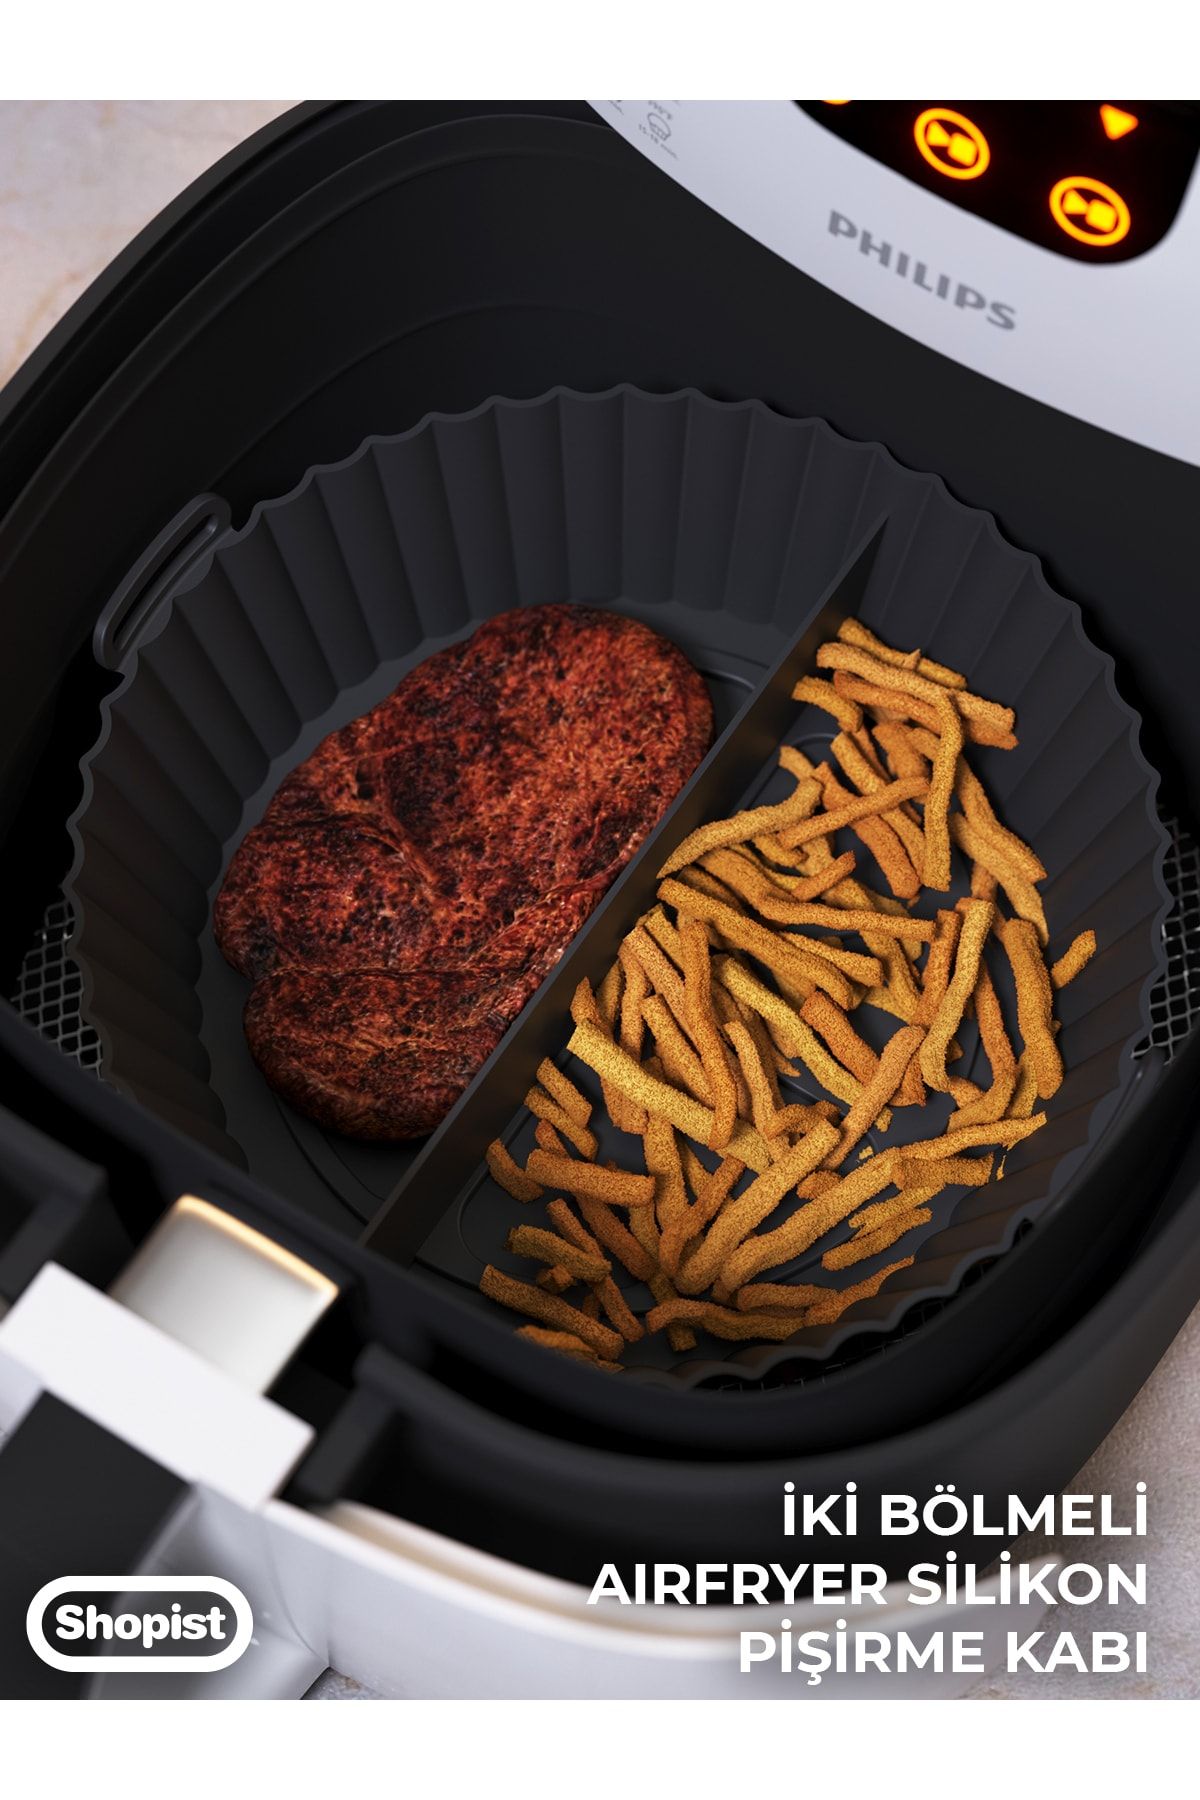 SHOPİST Airfryer 2 Bölmeli Pişirme Kabı Siyah Renk - Airfryer Pişirme Kağıdı Silikon Aksesuar - Bpa Free